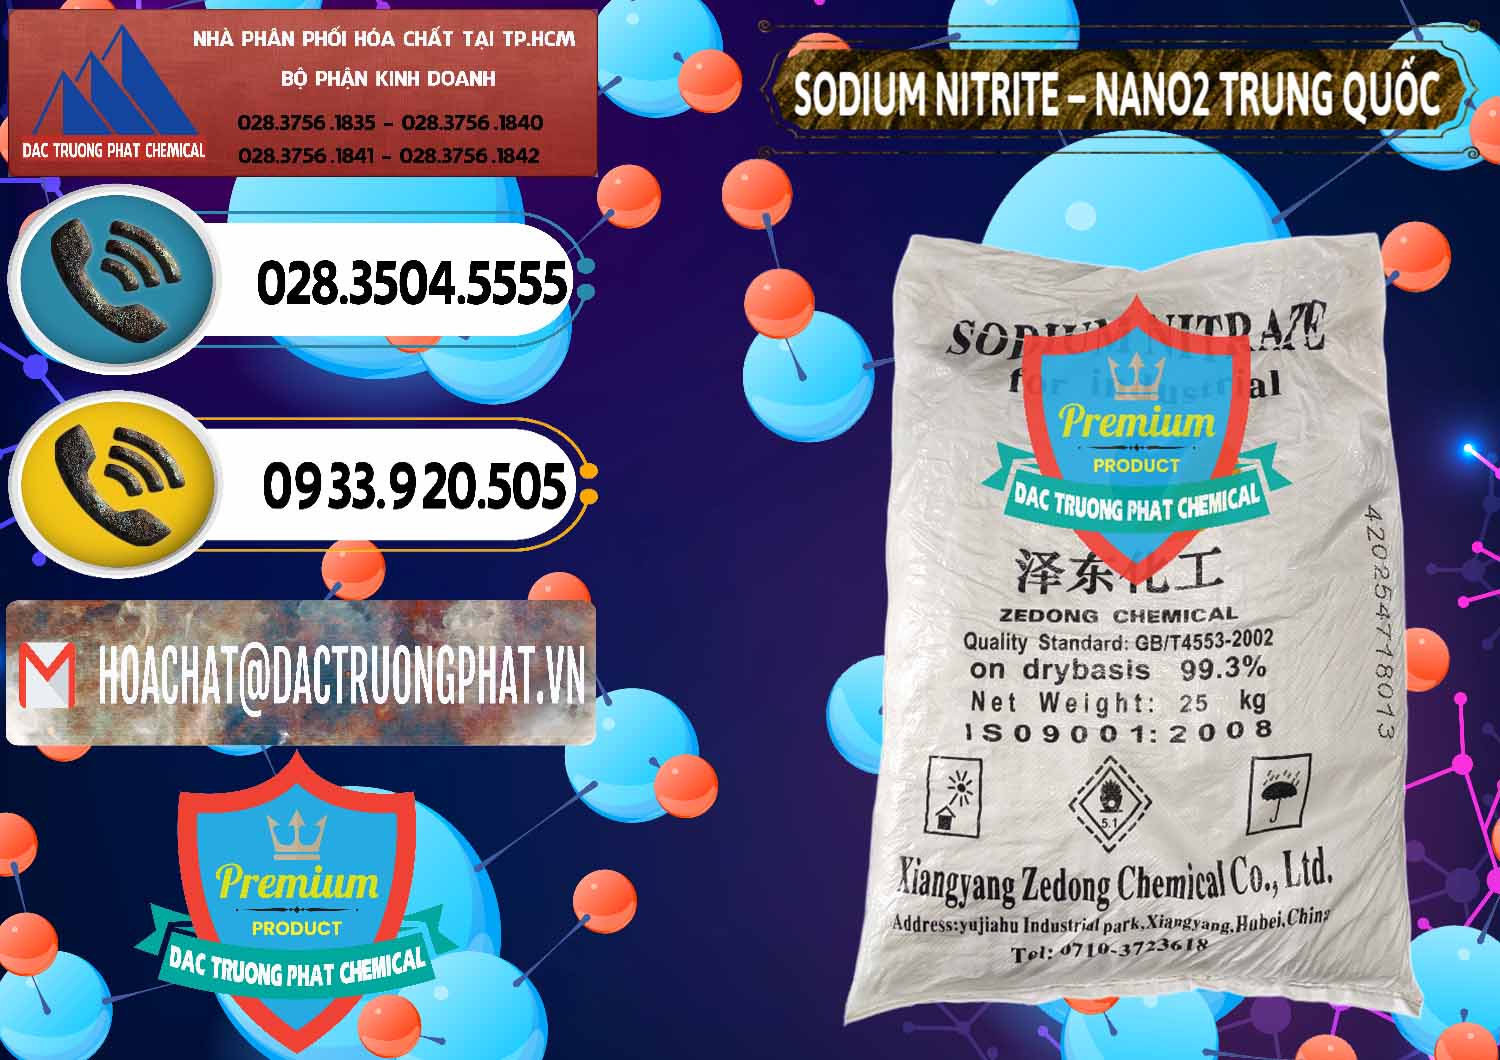 Cty chuyên phân phối _ bán Sodium Nitrite - NANO2 Zedong Trung Quốc China - 0149 - Phân phối _ bán hóa chất tại TP.HCM - hoachatdetnhuom.vn